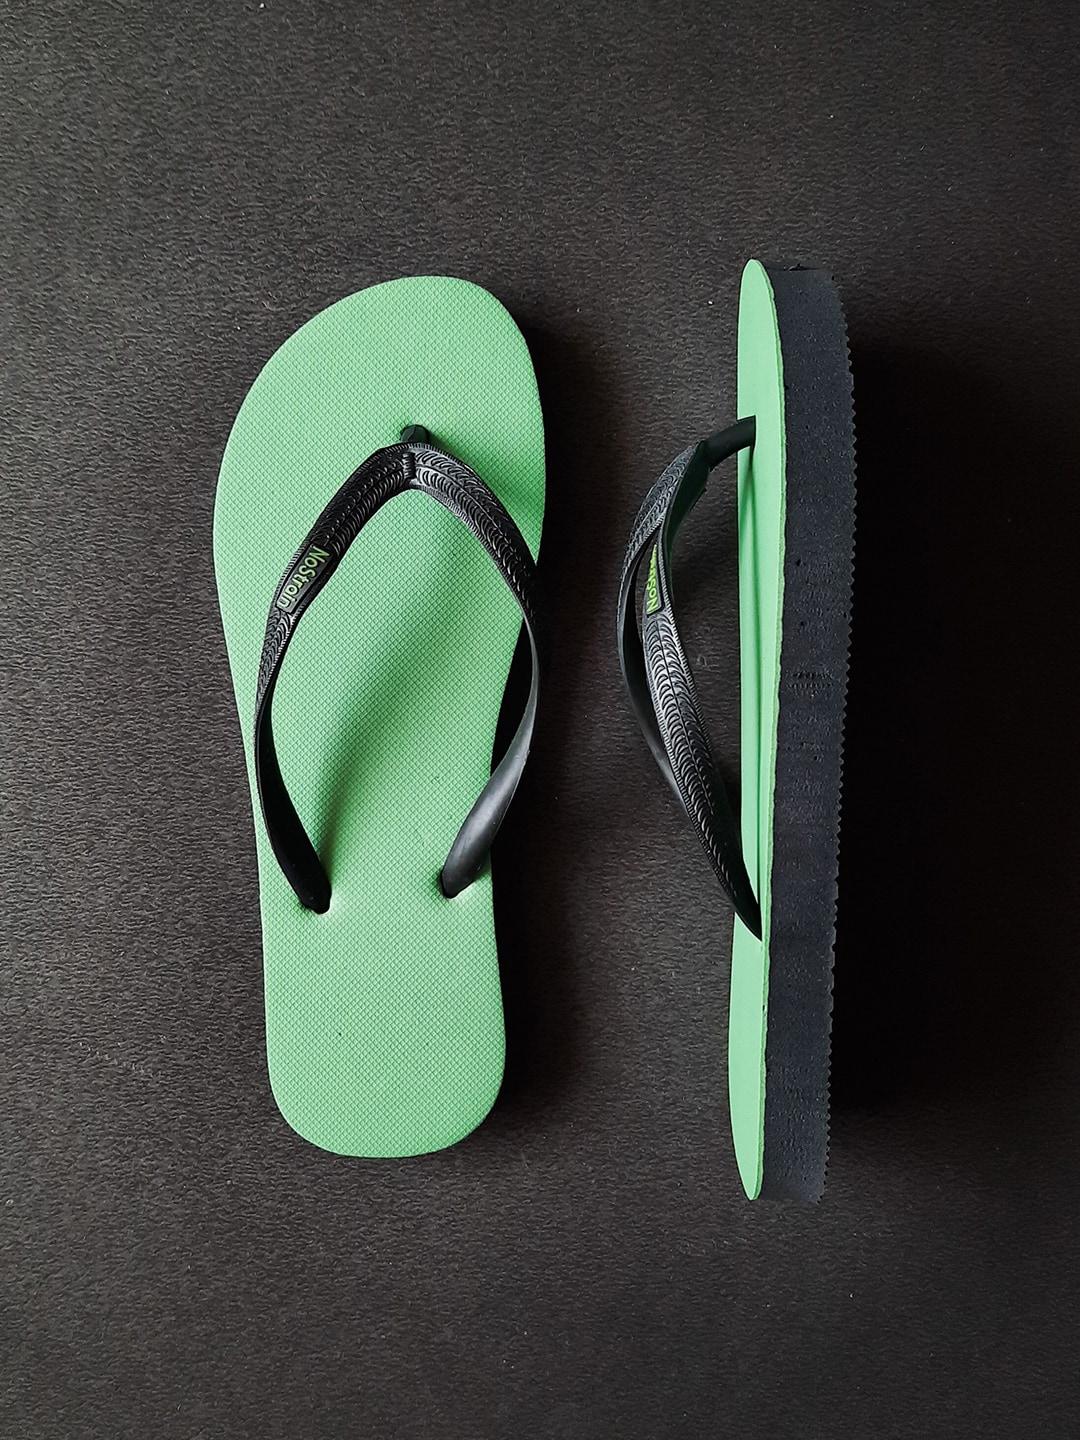 nostrain men green & black rubber thong flip-flops